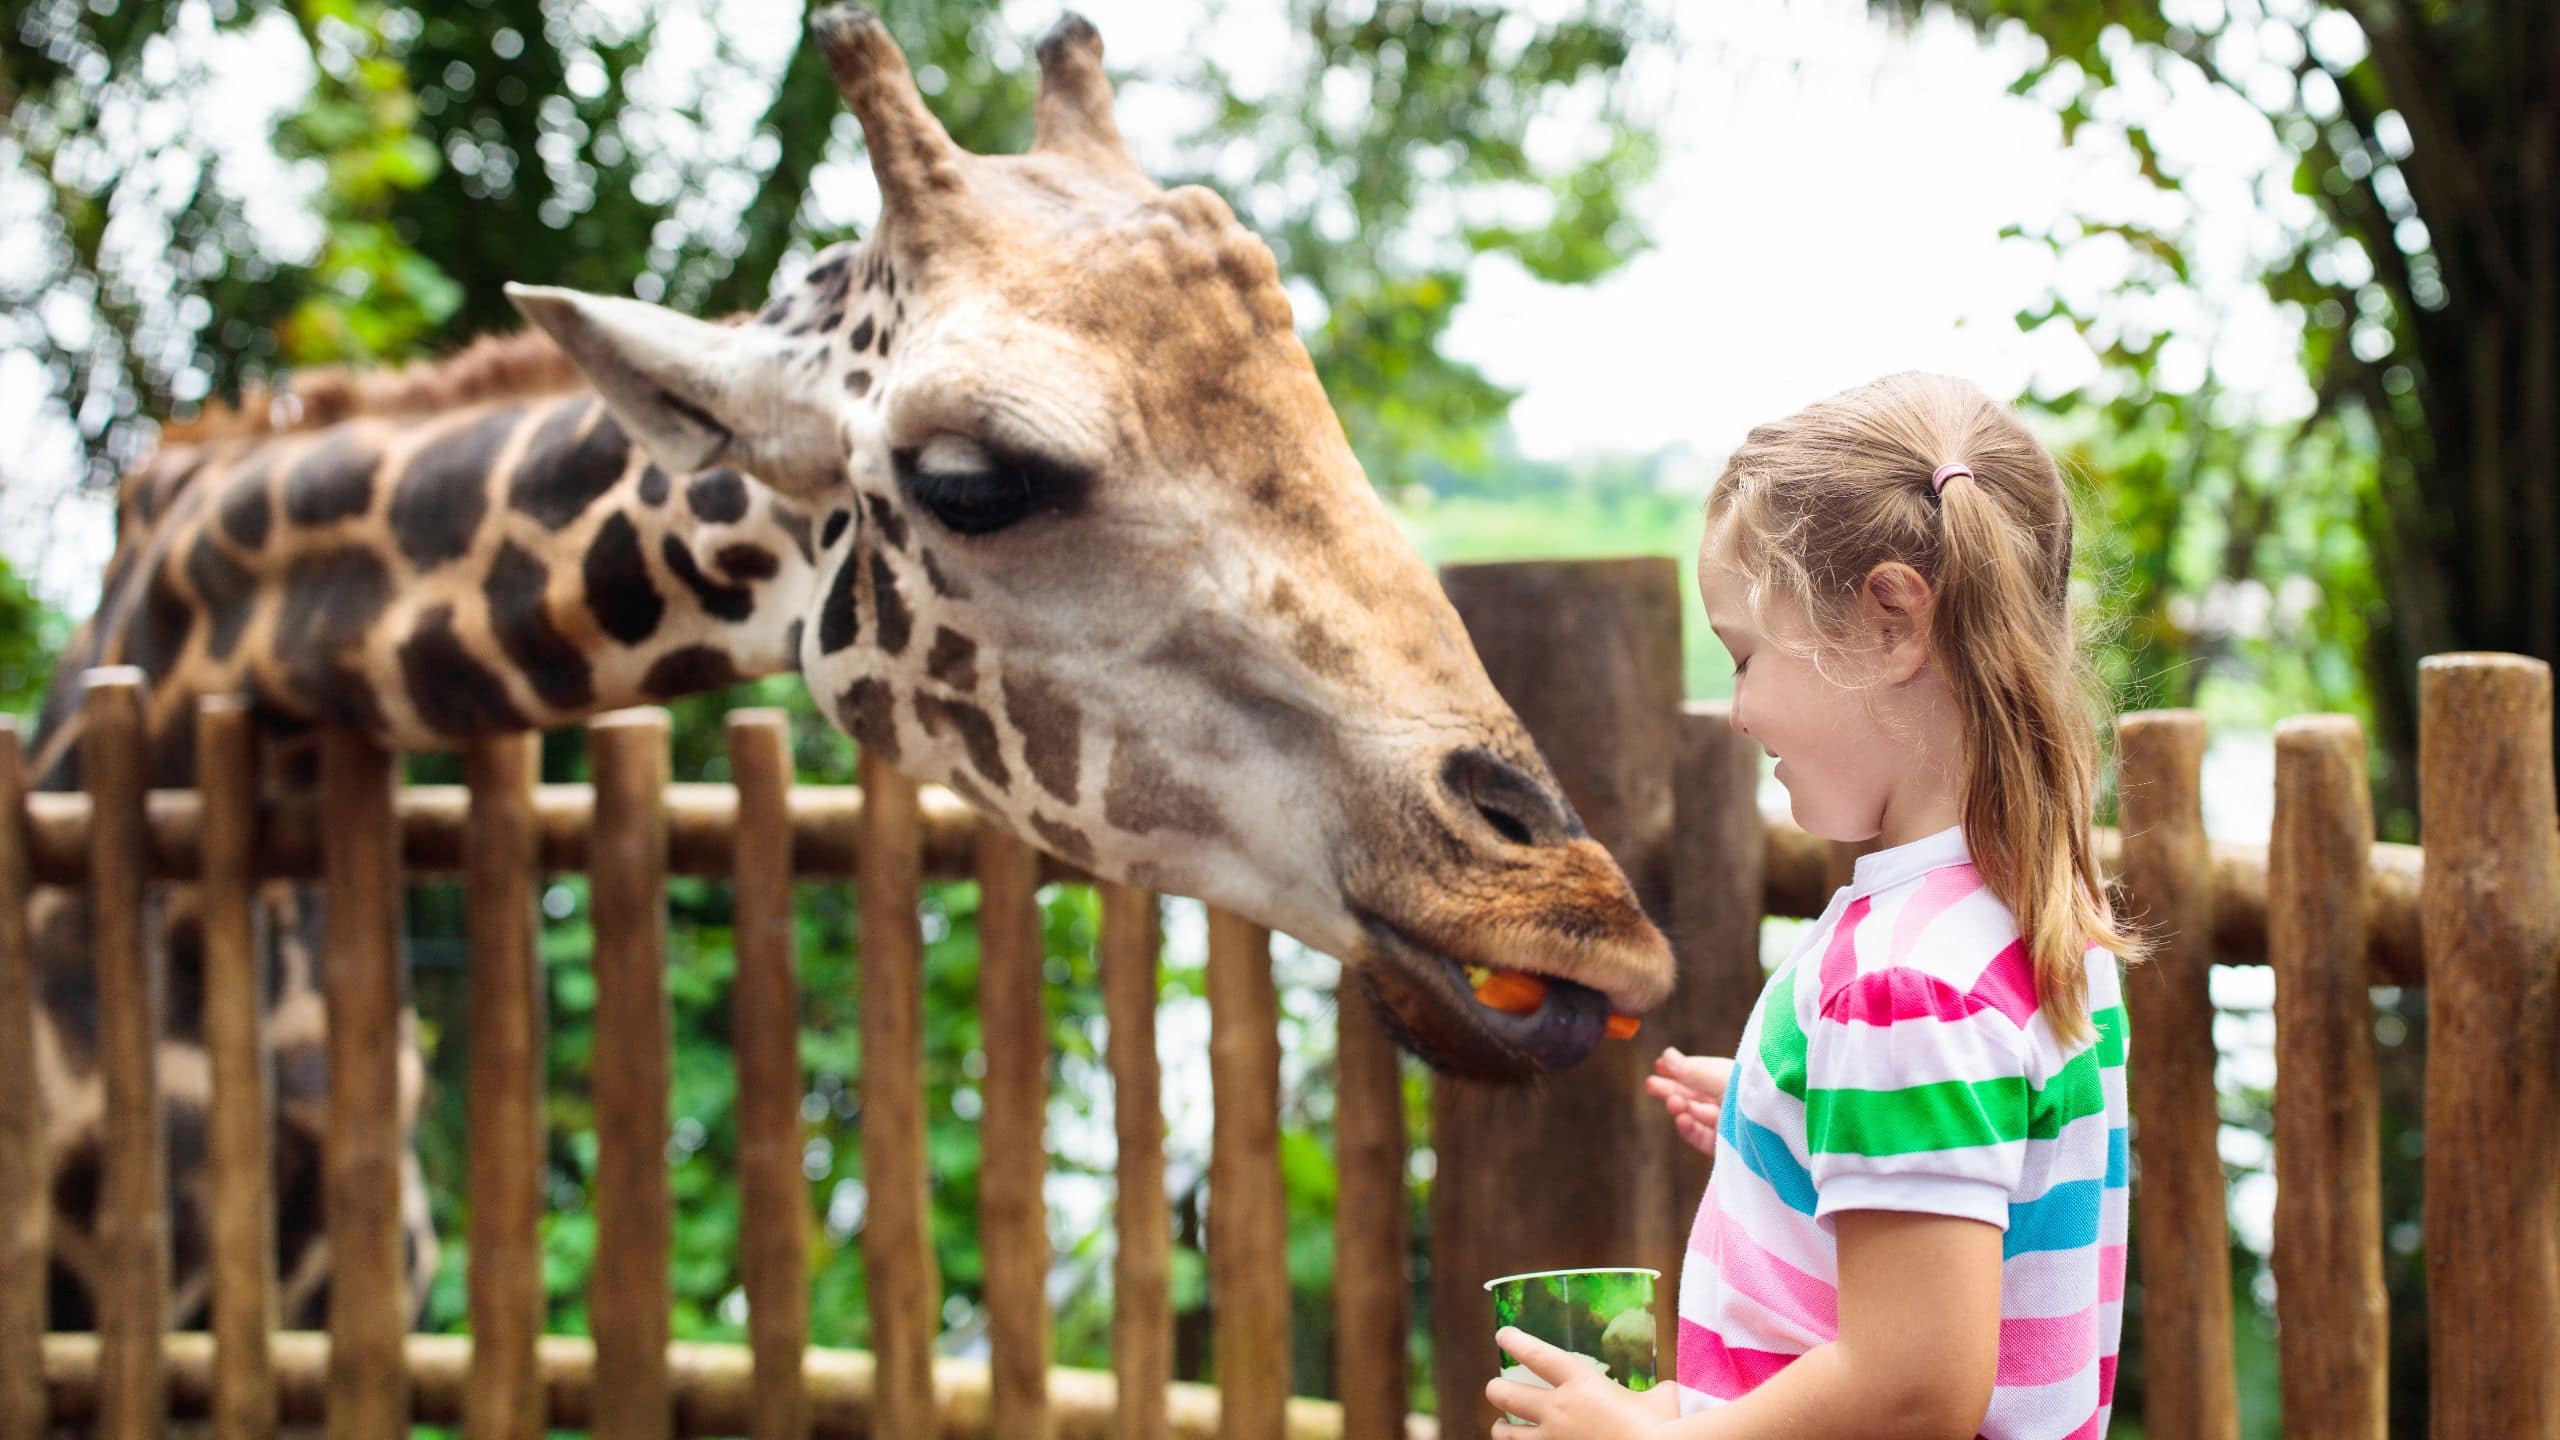 Hyatt HouseHyatt Place Girl Feeding Giraffe At Zoo